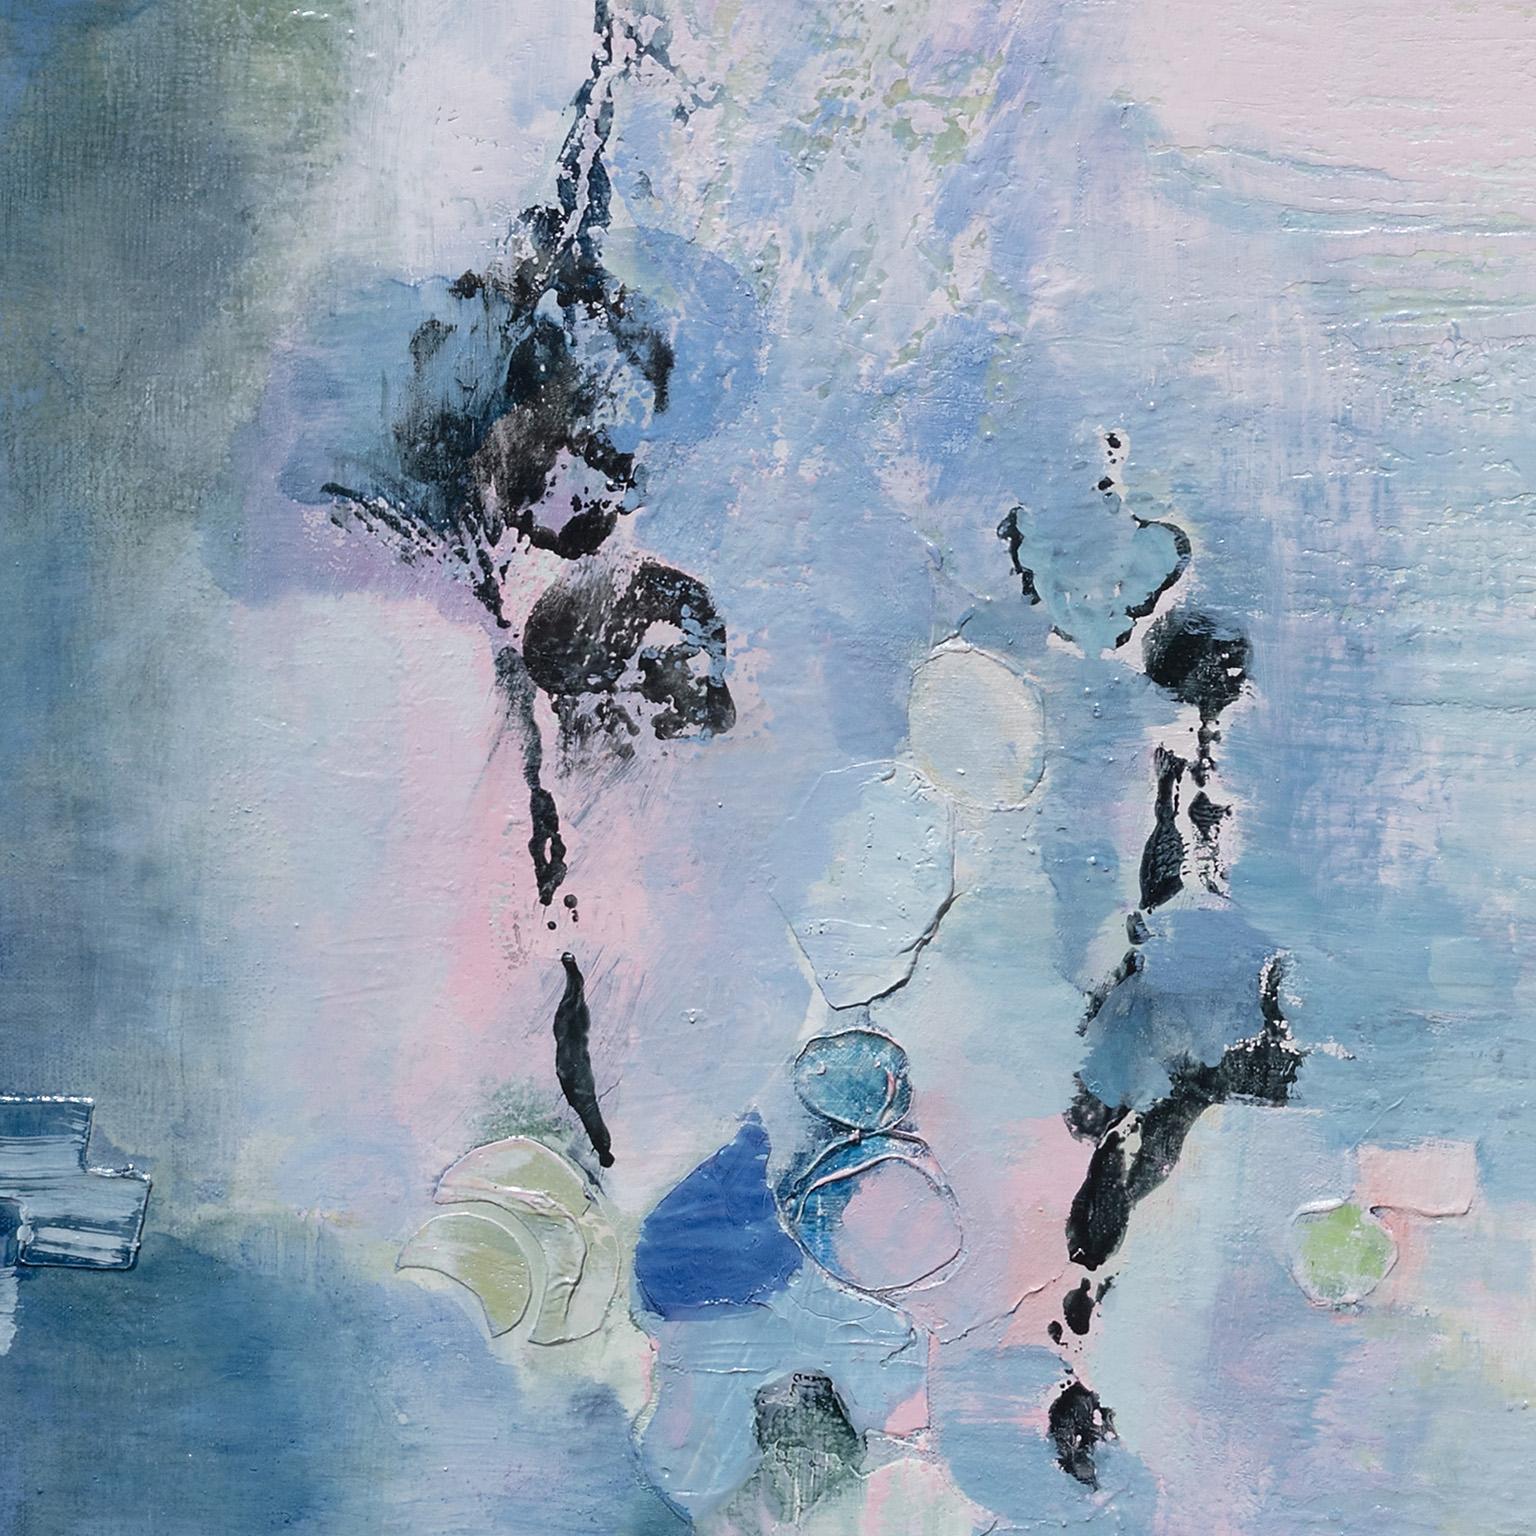 Dreams numériques - Huile sur toile - Couleurs pastel bleu, vert et rose - Abstrait Painting par Andrei Petrov